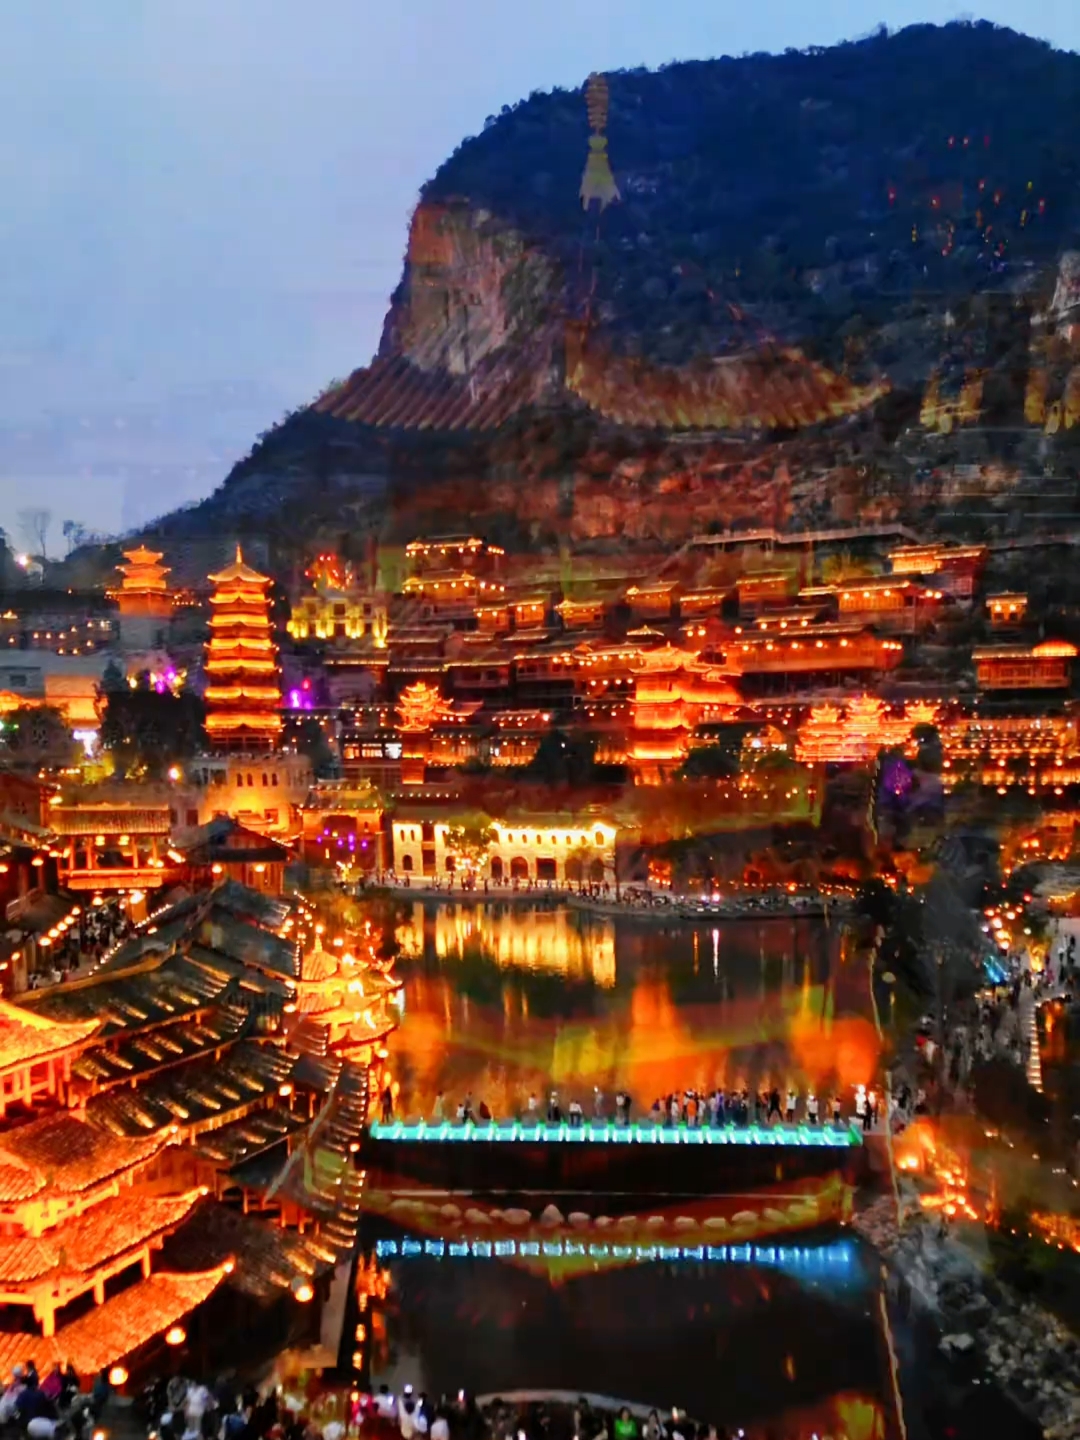 总要去一次贵州吧，总要来一趟峰林布依。 #贵州旅游景点推 #2024贵州旅发大会 #避暑度假到贵州#